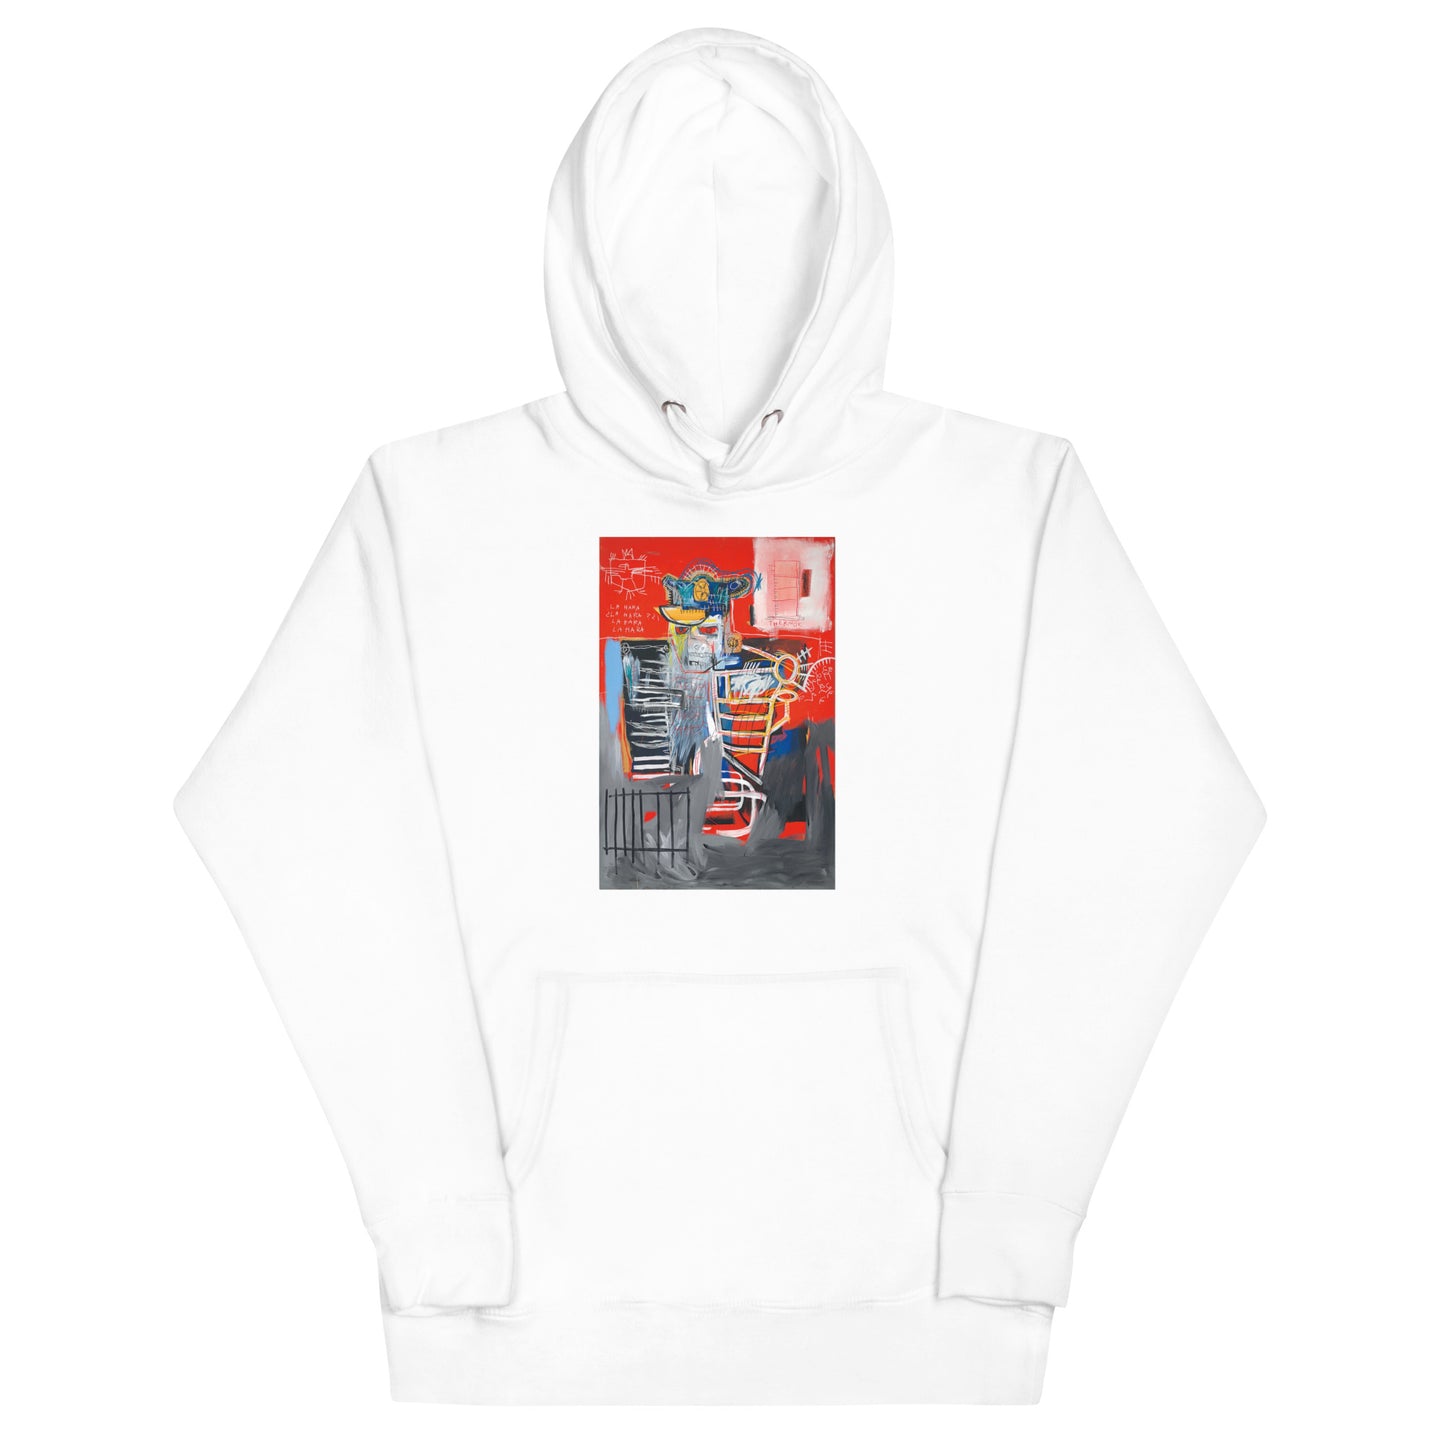 Jean-Michel Basquiat "La Hara" Artwork Printed Premium Streetwear Sweatshirt Hoodie White